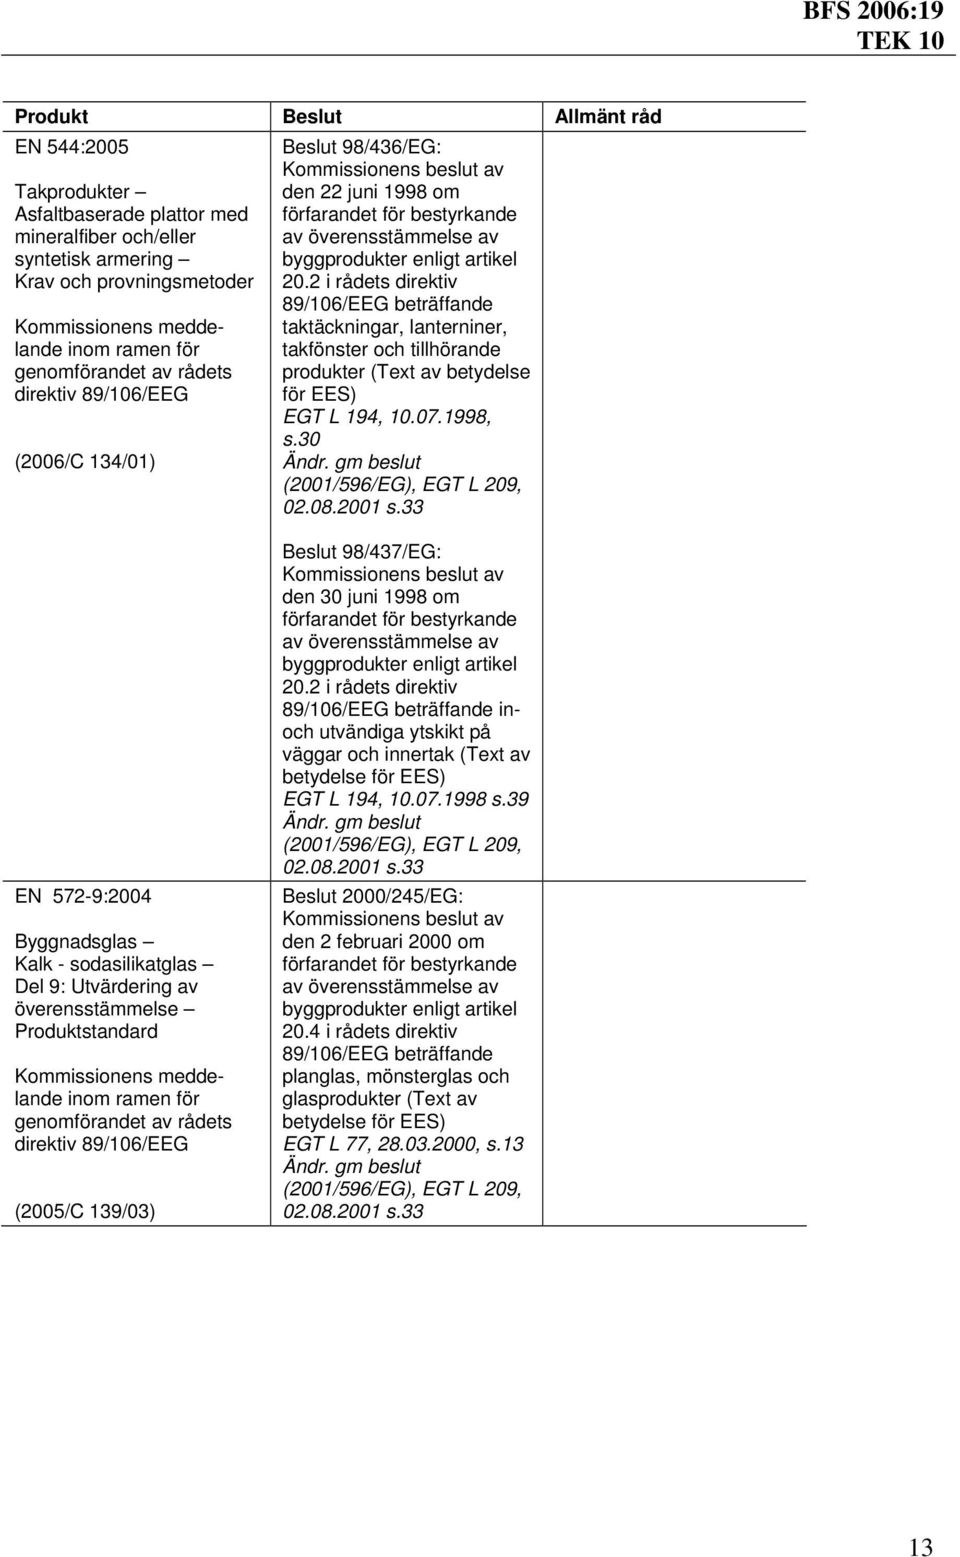 30 EN 572-9:2004 Byggnadsglas Kalk - sodasilikatglas Del 9: Utvärdering av överensstämmelse Produktstandard meddelande Beslut 98/437/EG: den 30 juni 1998 om inoch